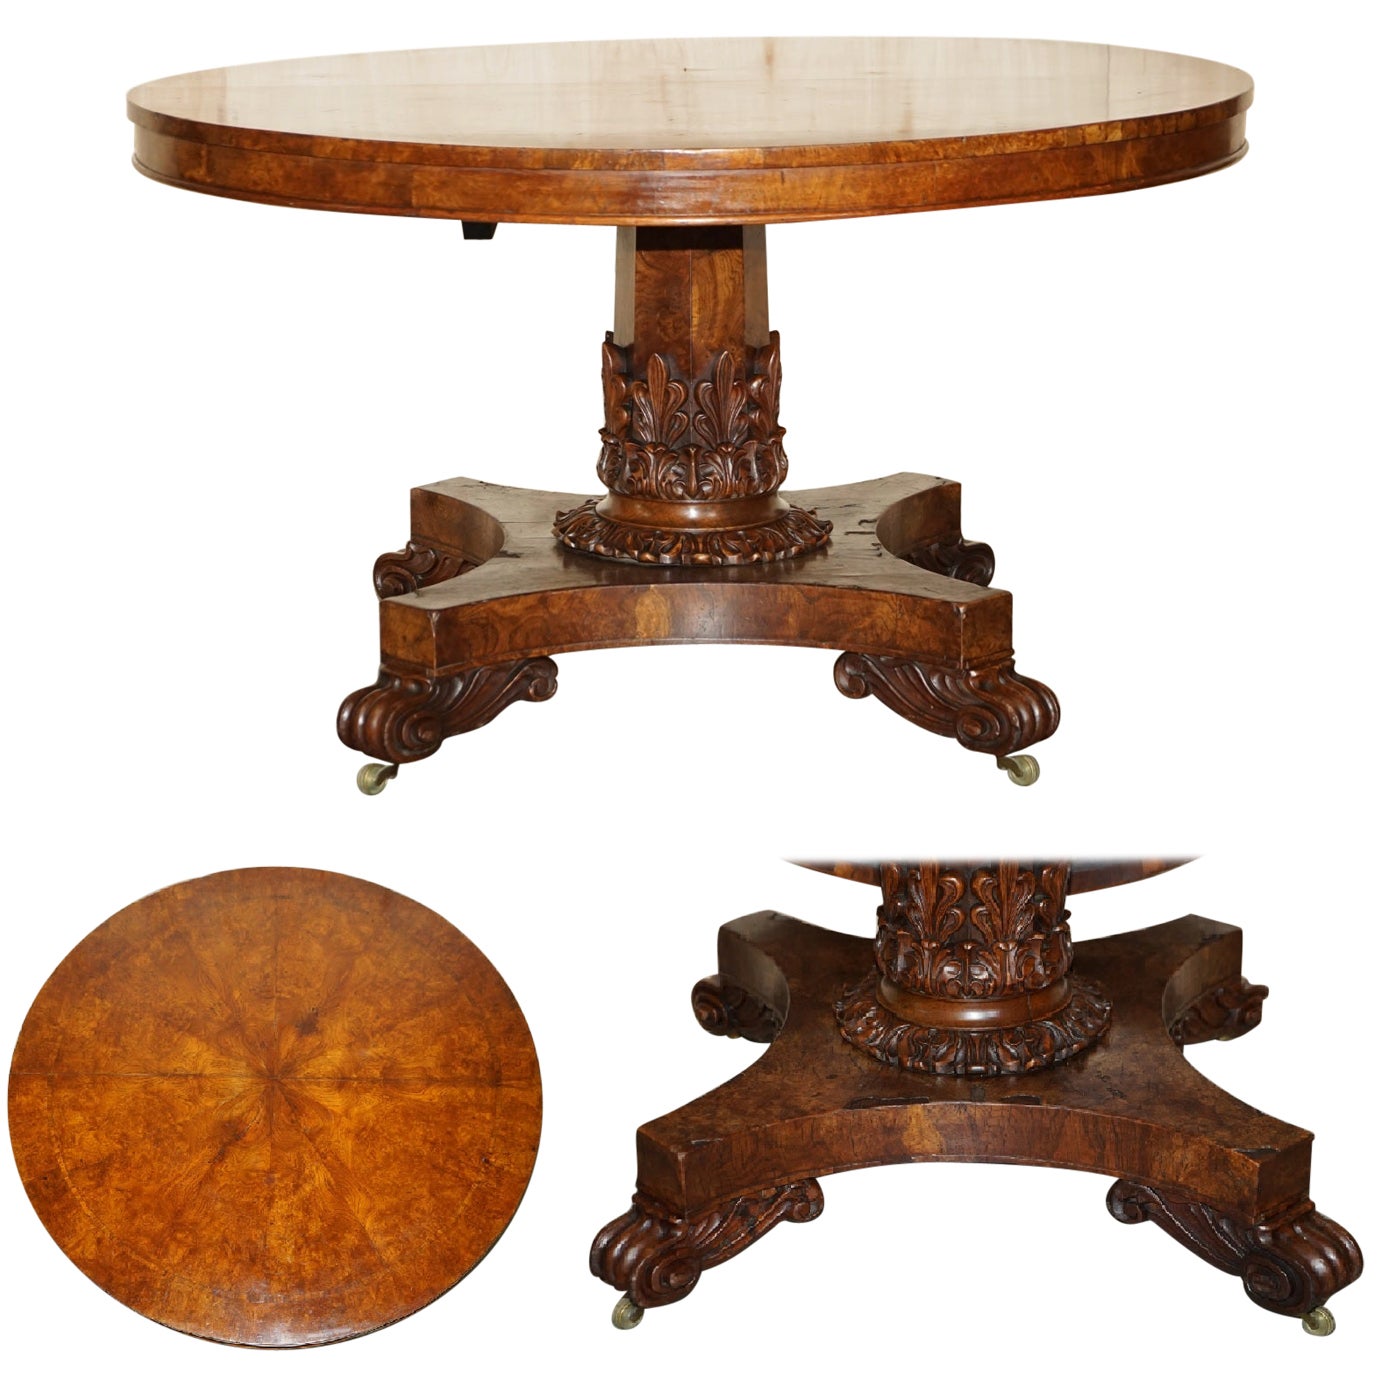 Sublime table d'appoint victorienne en chêne Pollard sculptée à la main datant d'environ 1840